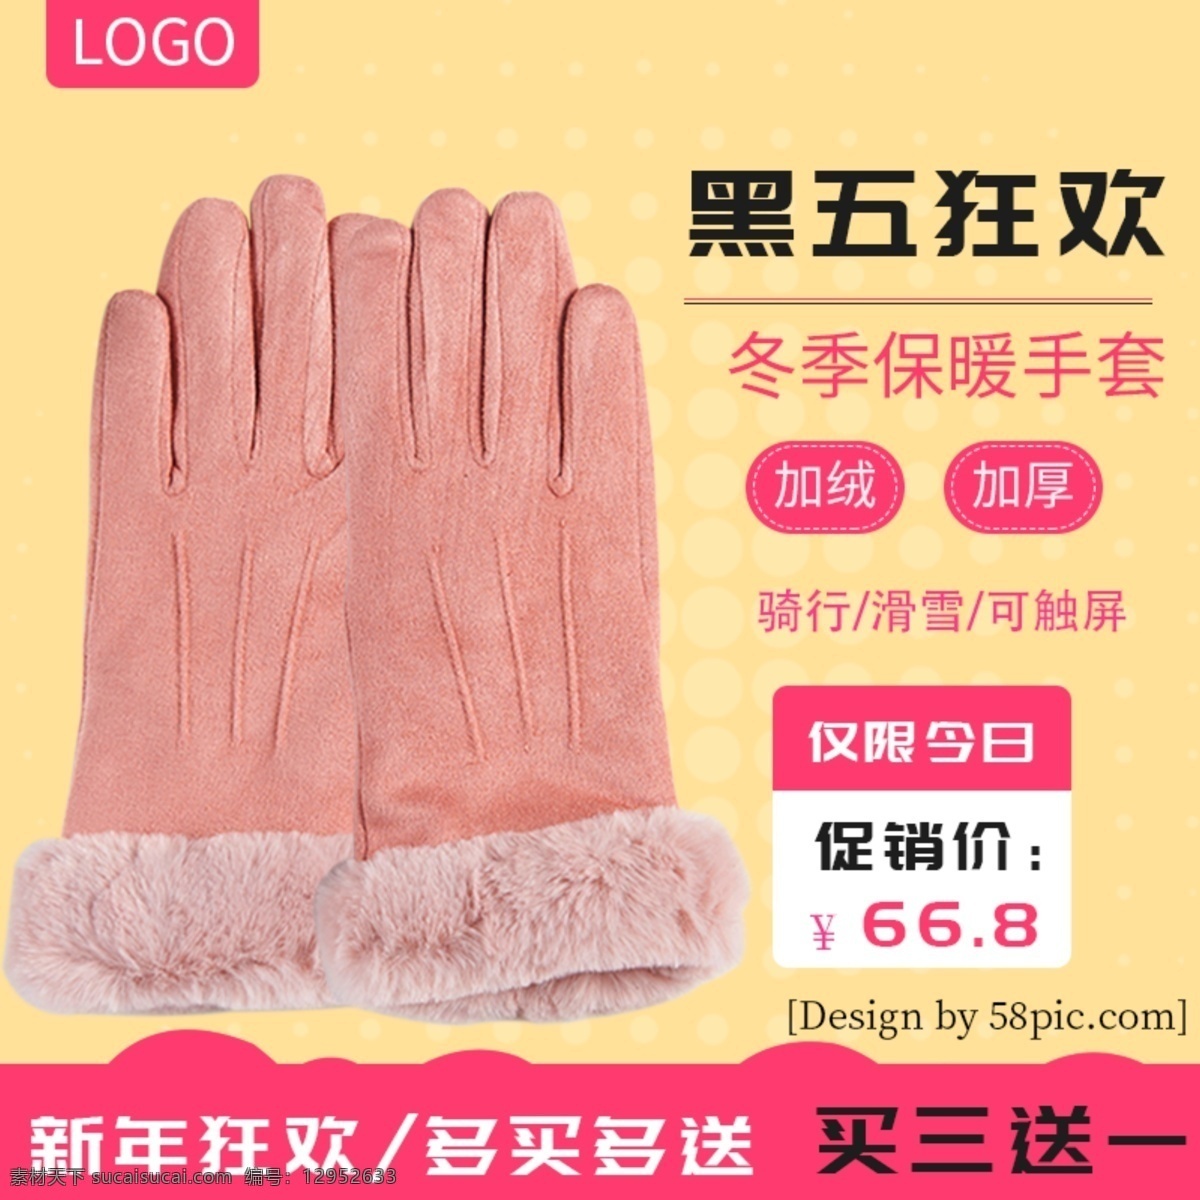 冬季 保暖 手套 主 图 粉红色背景 电商 淘宝 模板 简约 活动